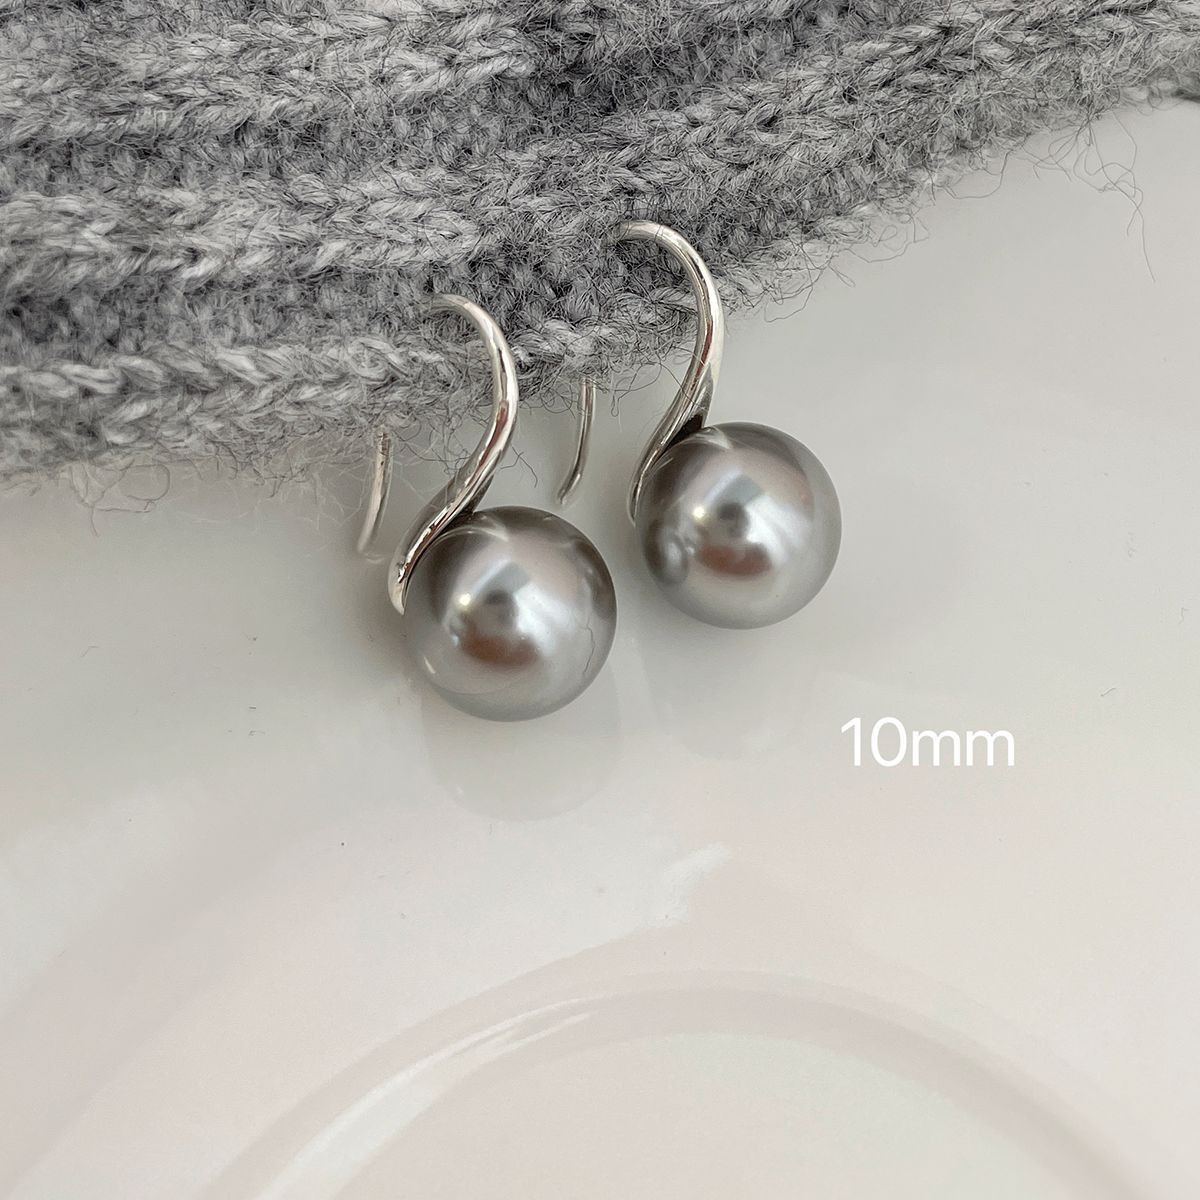 Pearl Earrings Niche Gray Large Pearl Earrings Earrings Ins Silver Pin Earrings Pearl Earrings High-Grade Wholesale